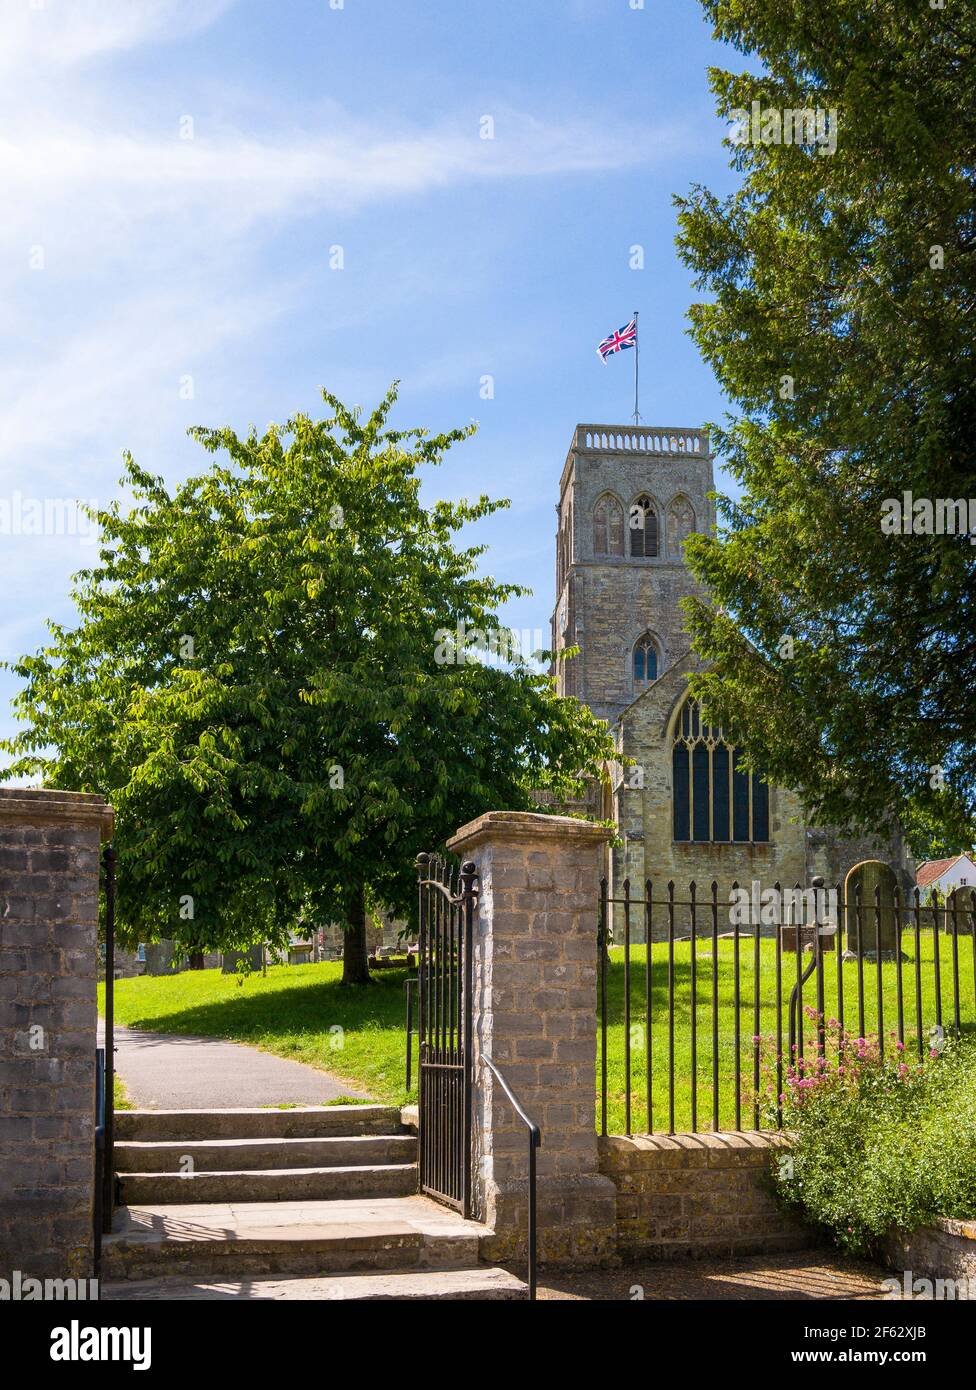 Église Sainte-Marie dans le village de Wedmore, Somerset, Angleterre. Banque D'Images